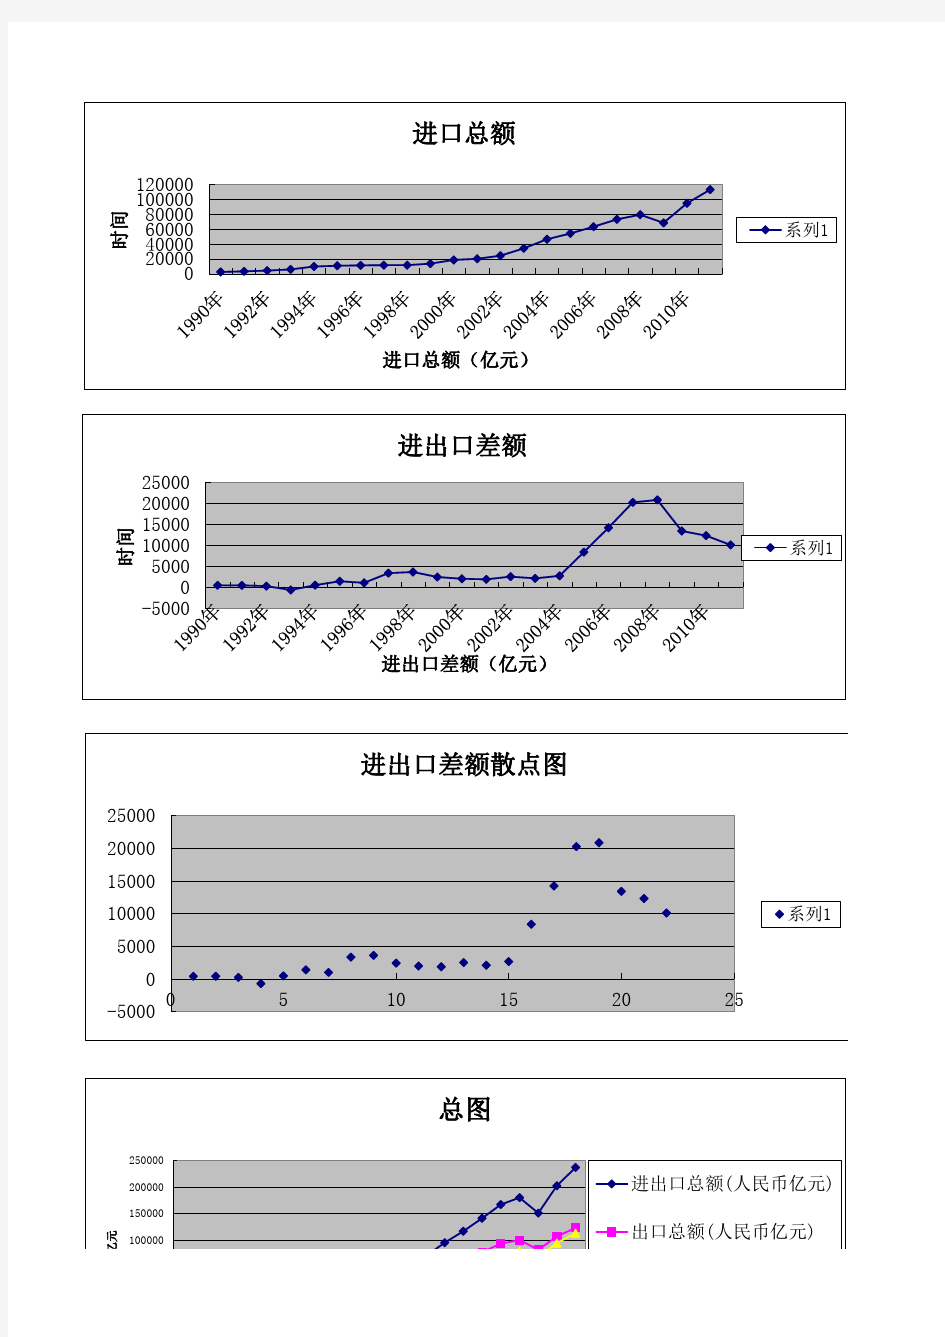 中国进出口贸易总额1990-2011数据